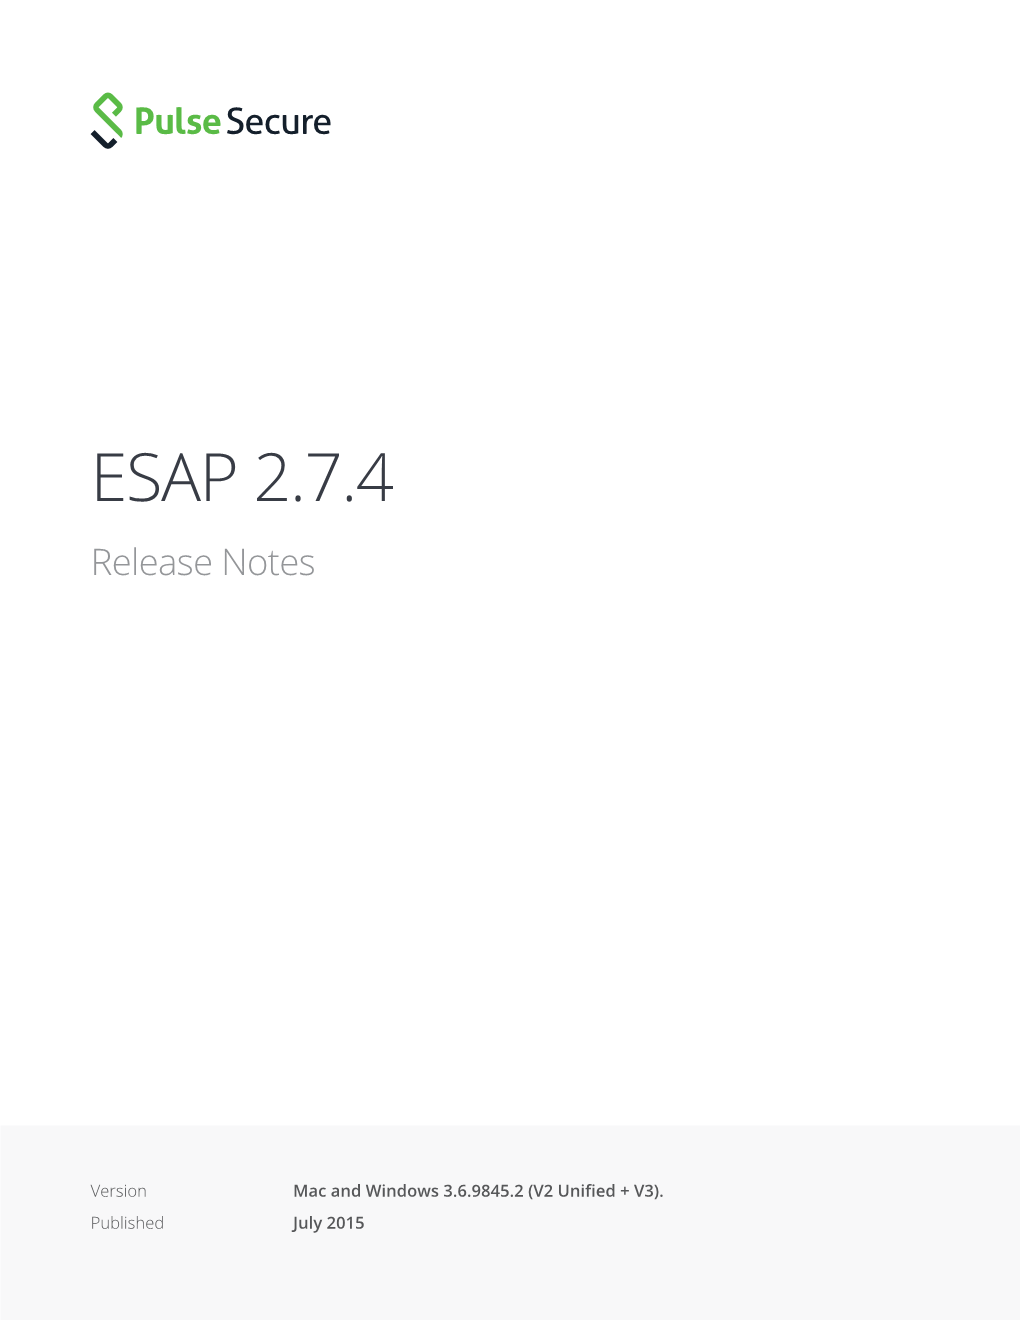 ESAP 2.7.4 Release Notes